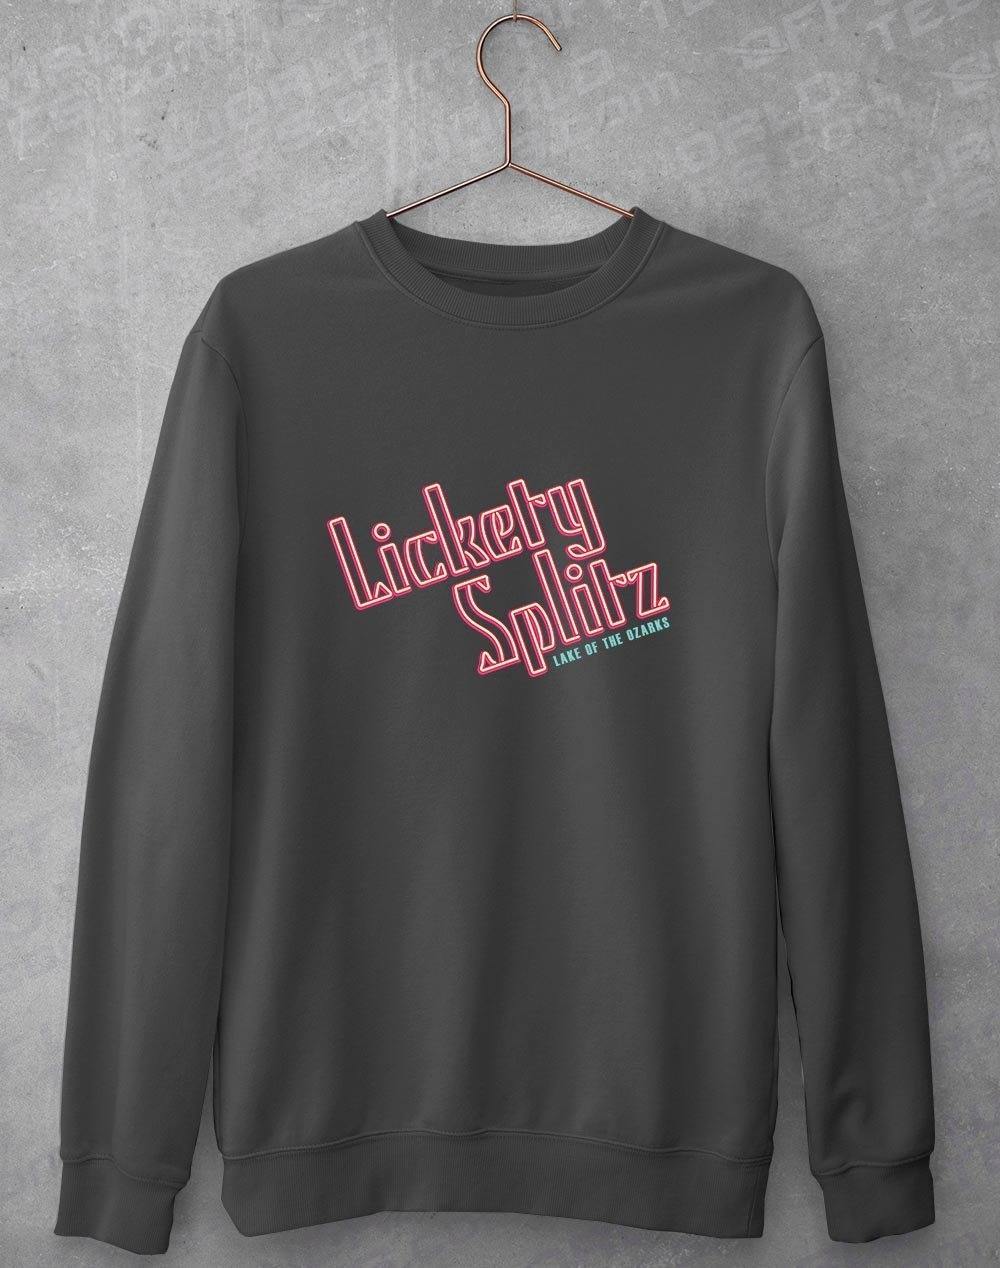 Lickety Splitz Sweatshirt S / Charcoal  - Off World Tees